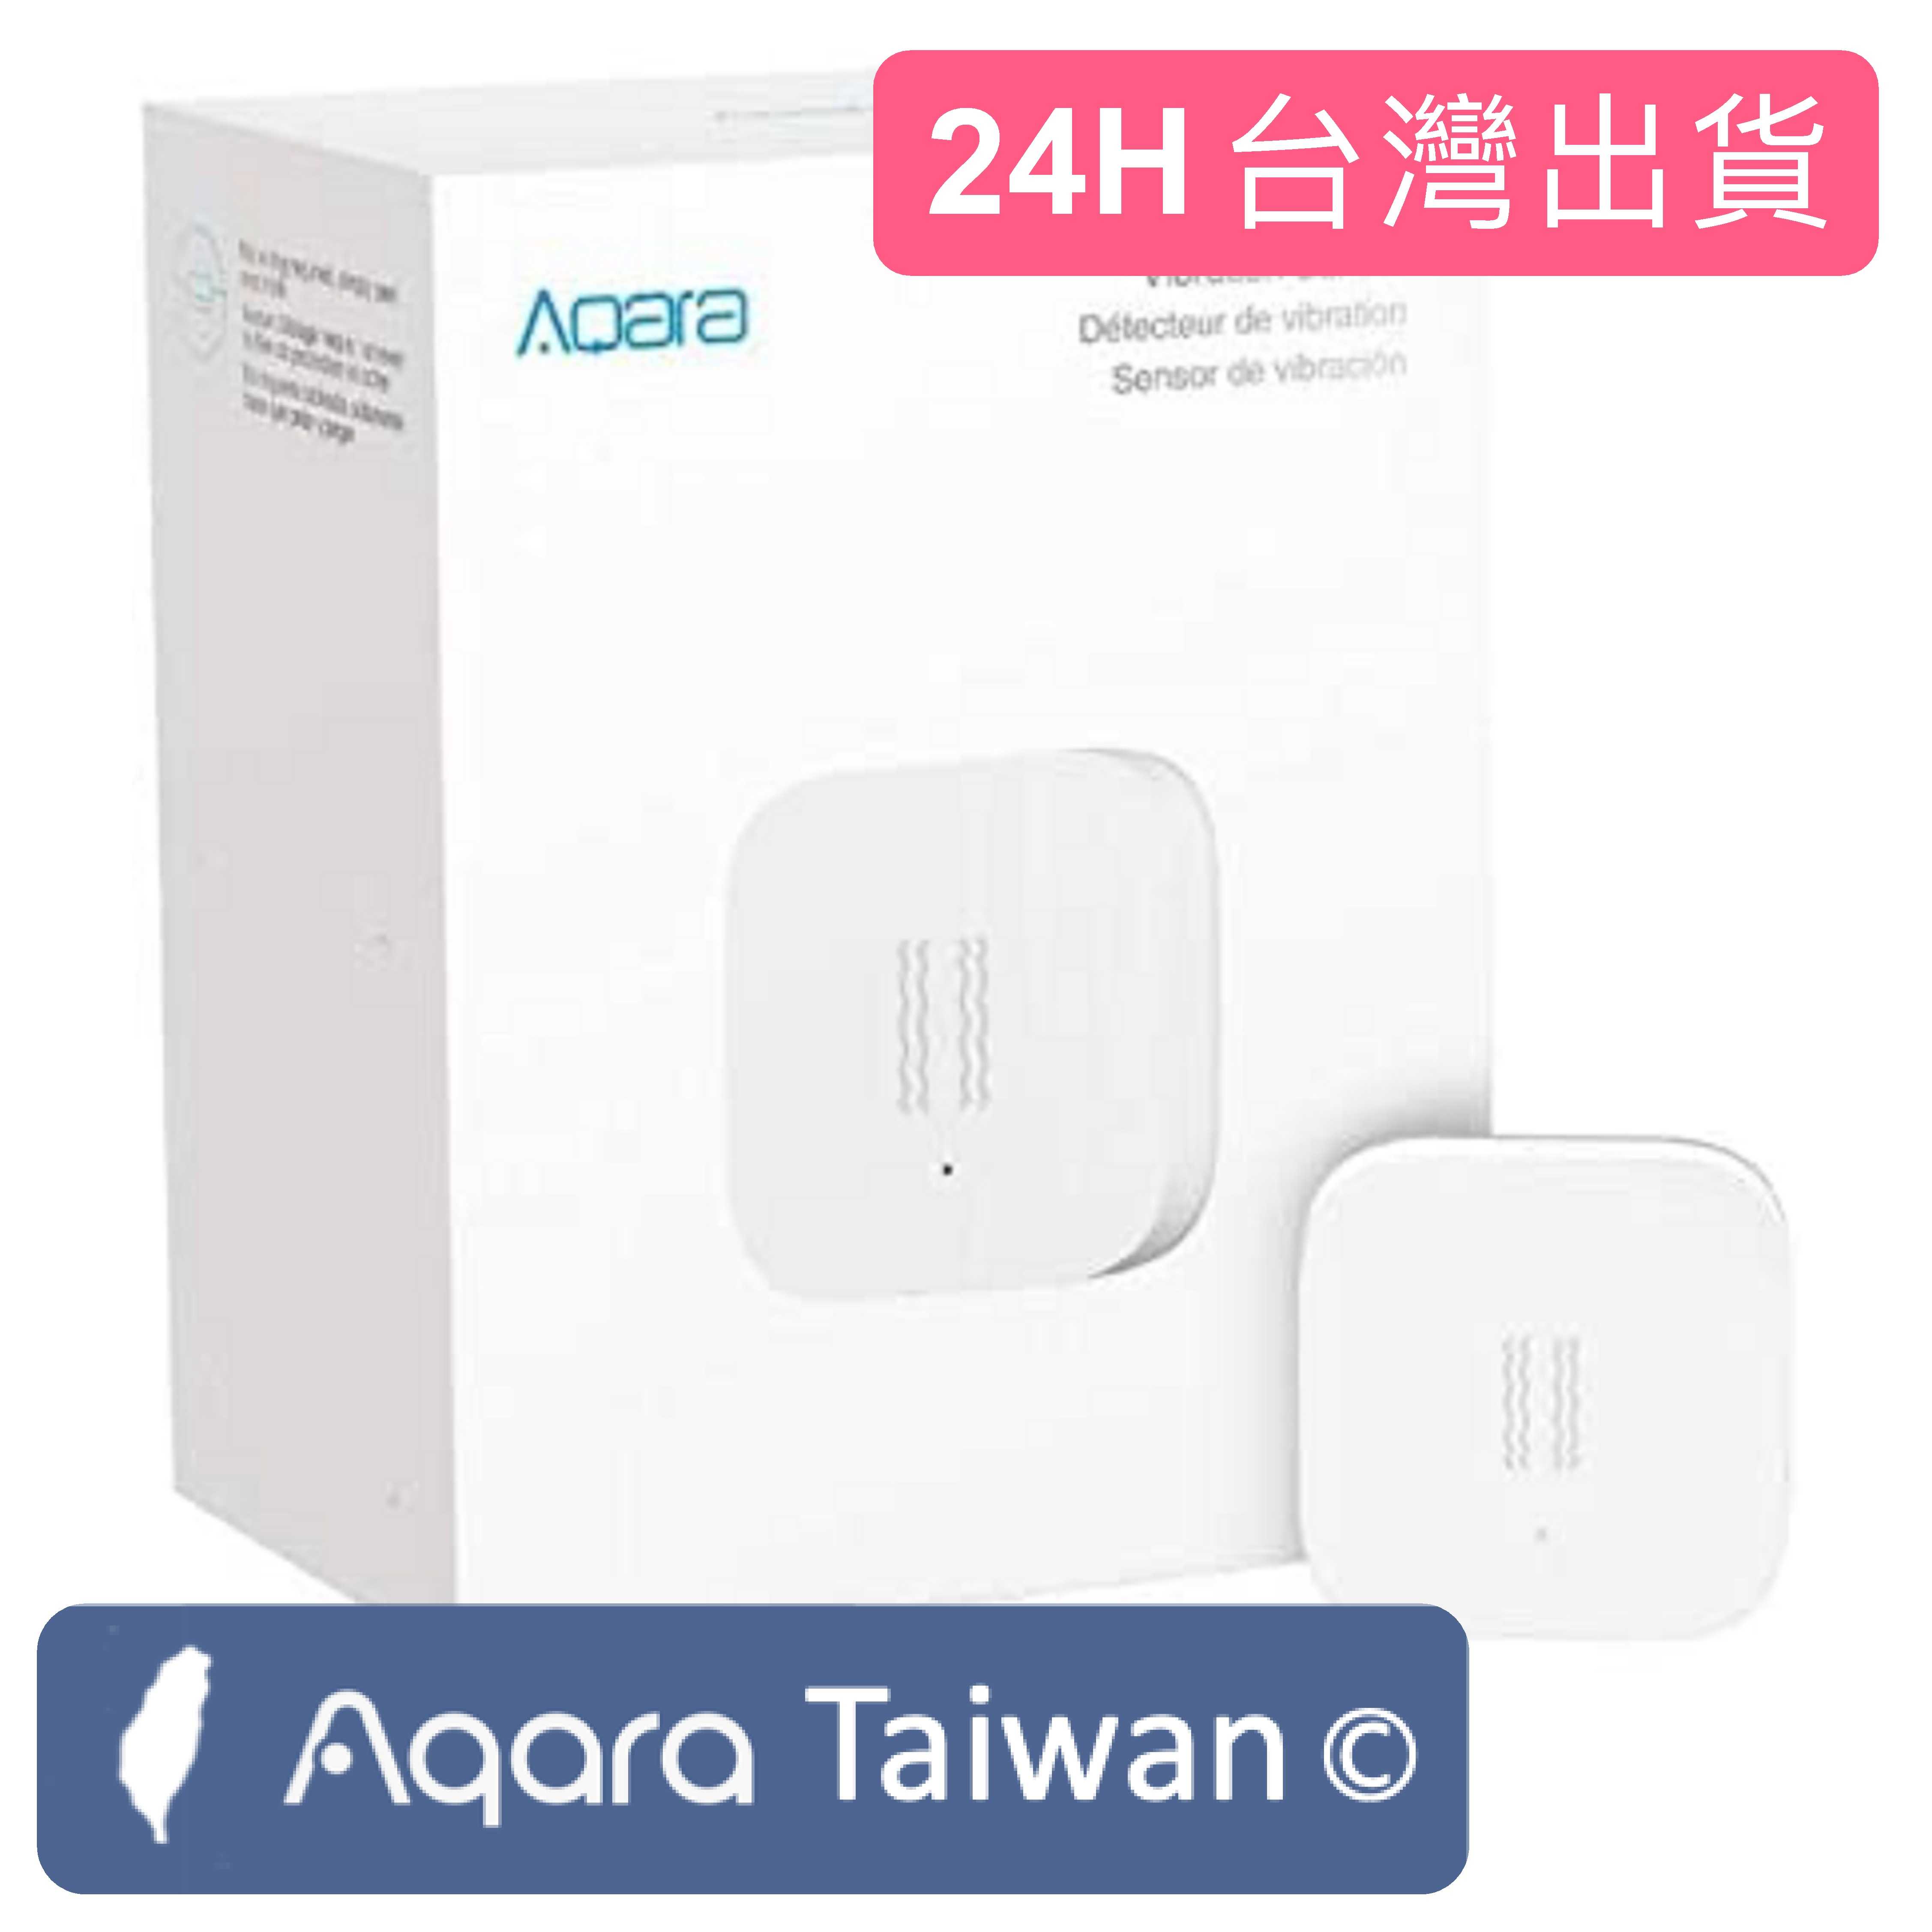 [台灣現貨保固2年]Aqara 震動感應器 國際台灣版 Vibration Sensor